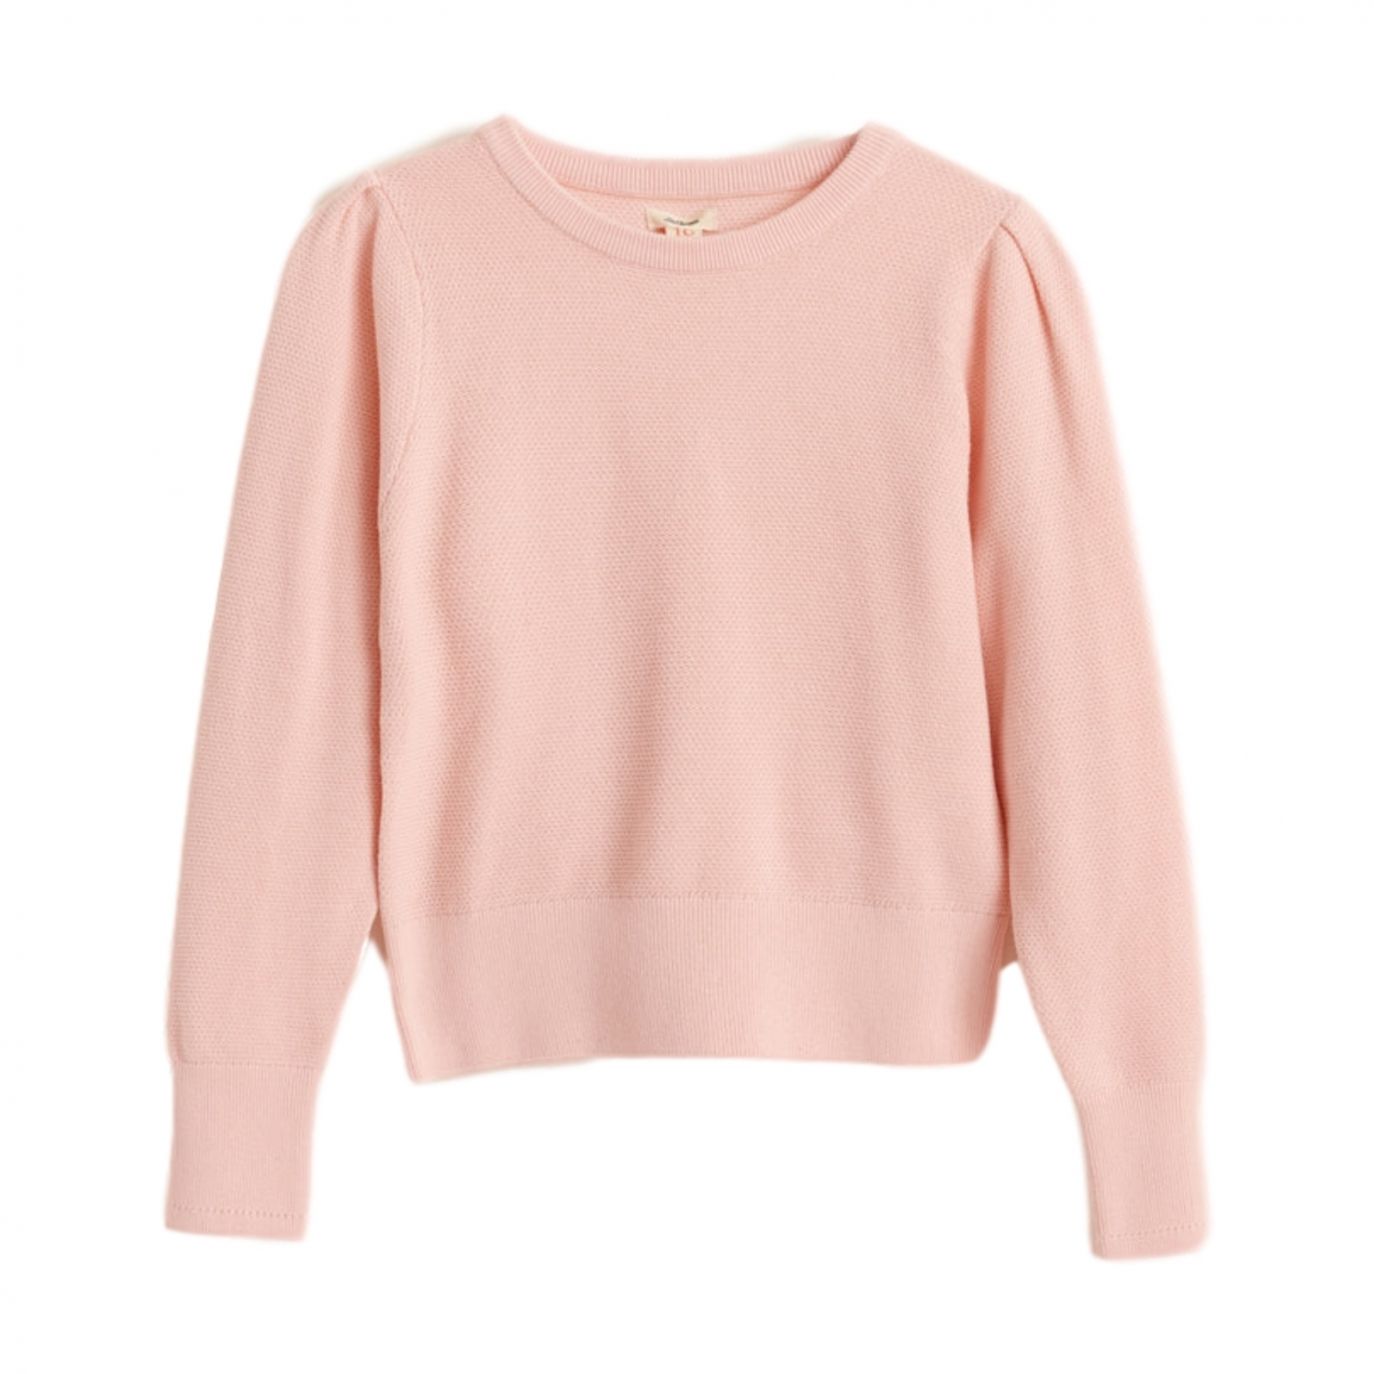 Bellerose - Dorale Knitwear Pink - Sweaters - BK201907 K1085U 